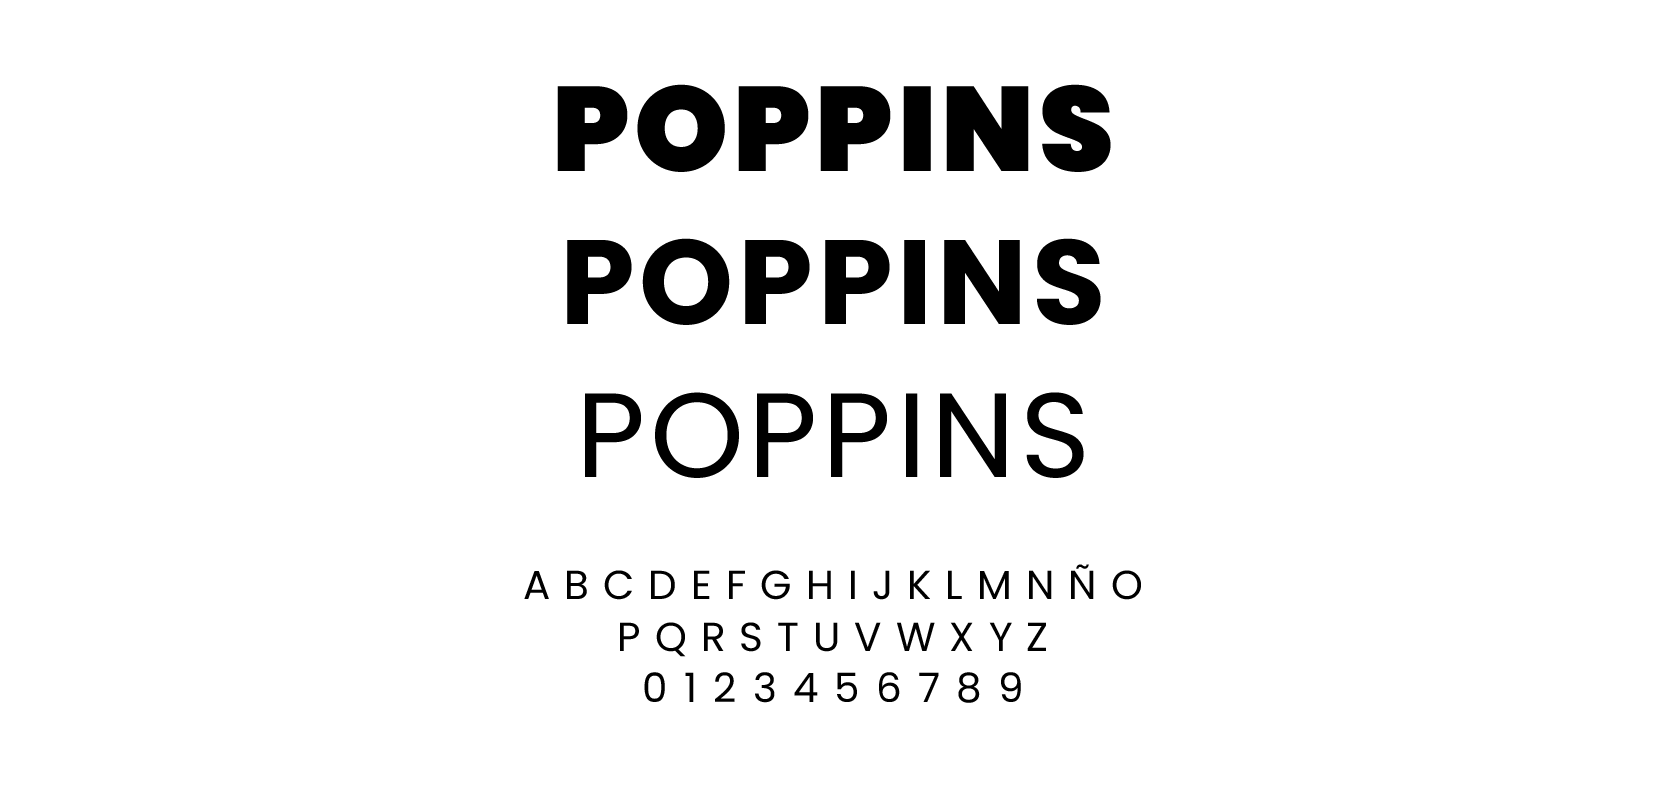 Poppins Tipografía Google Fonts